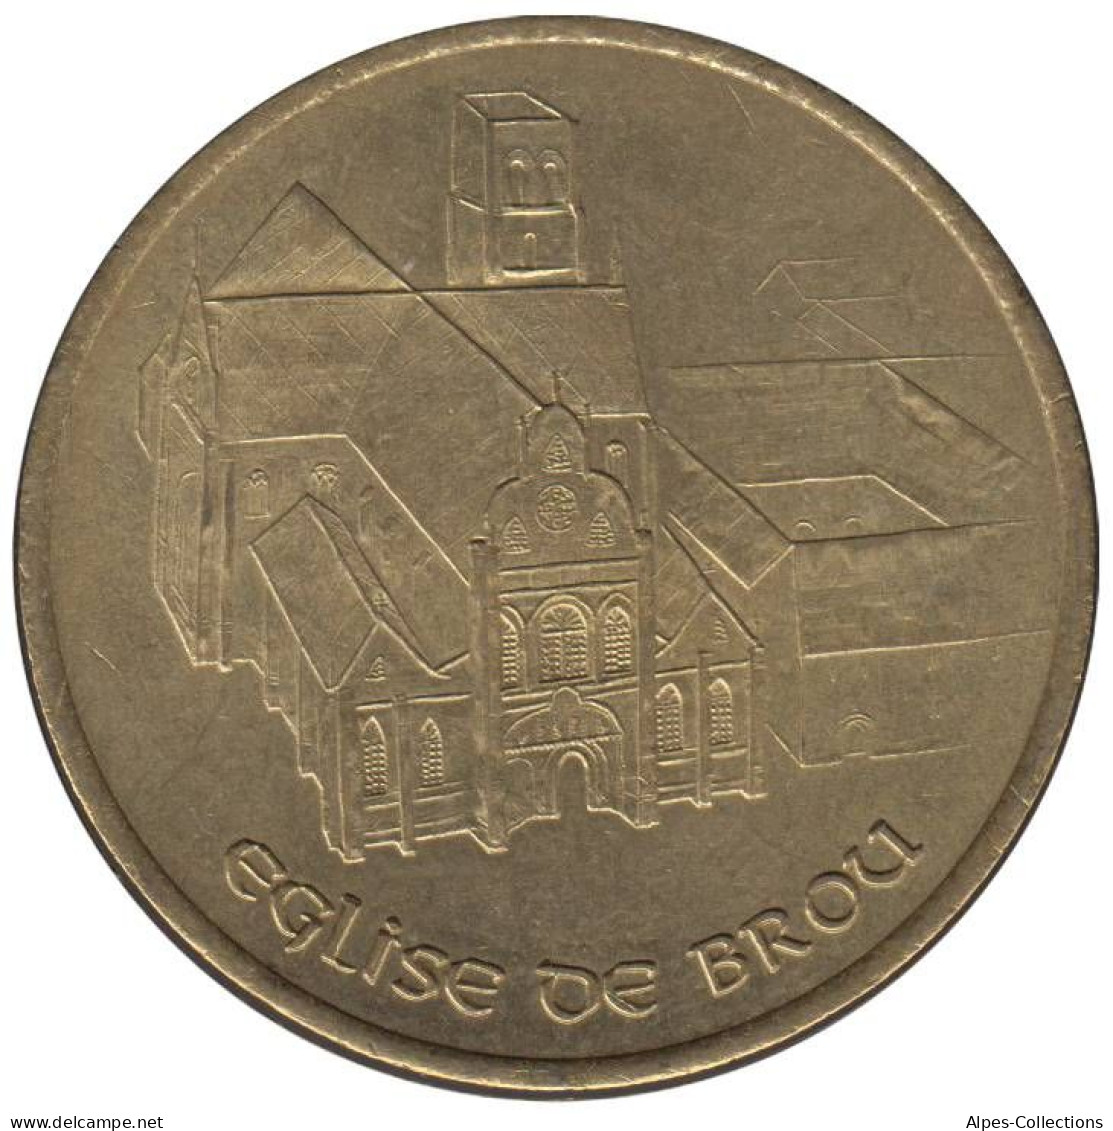 BOURG EN BRESSE - EU0010.6 - 1 EURO DES VILLES - Réf: T266 - 1997 - Euro Delle Città